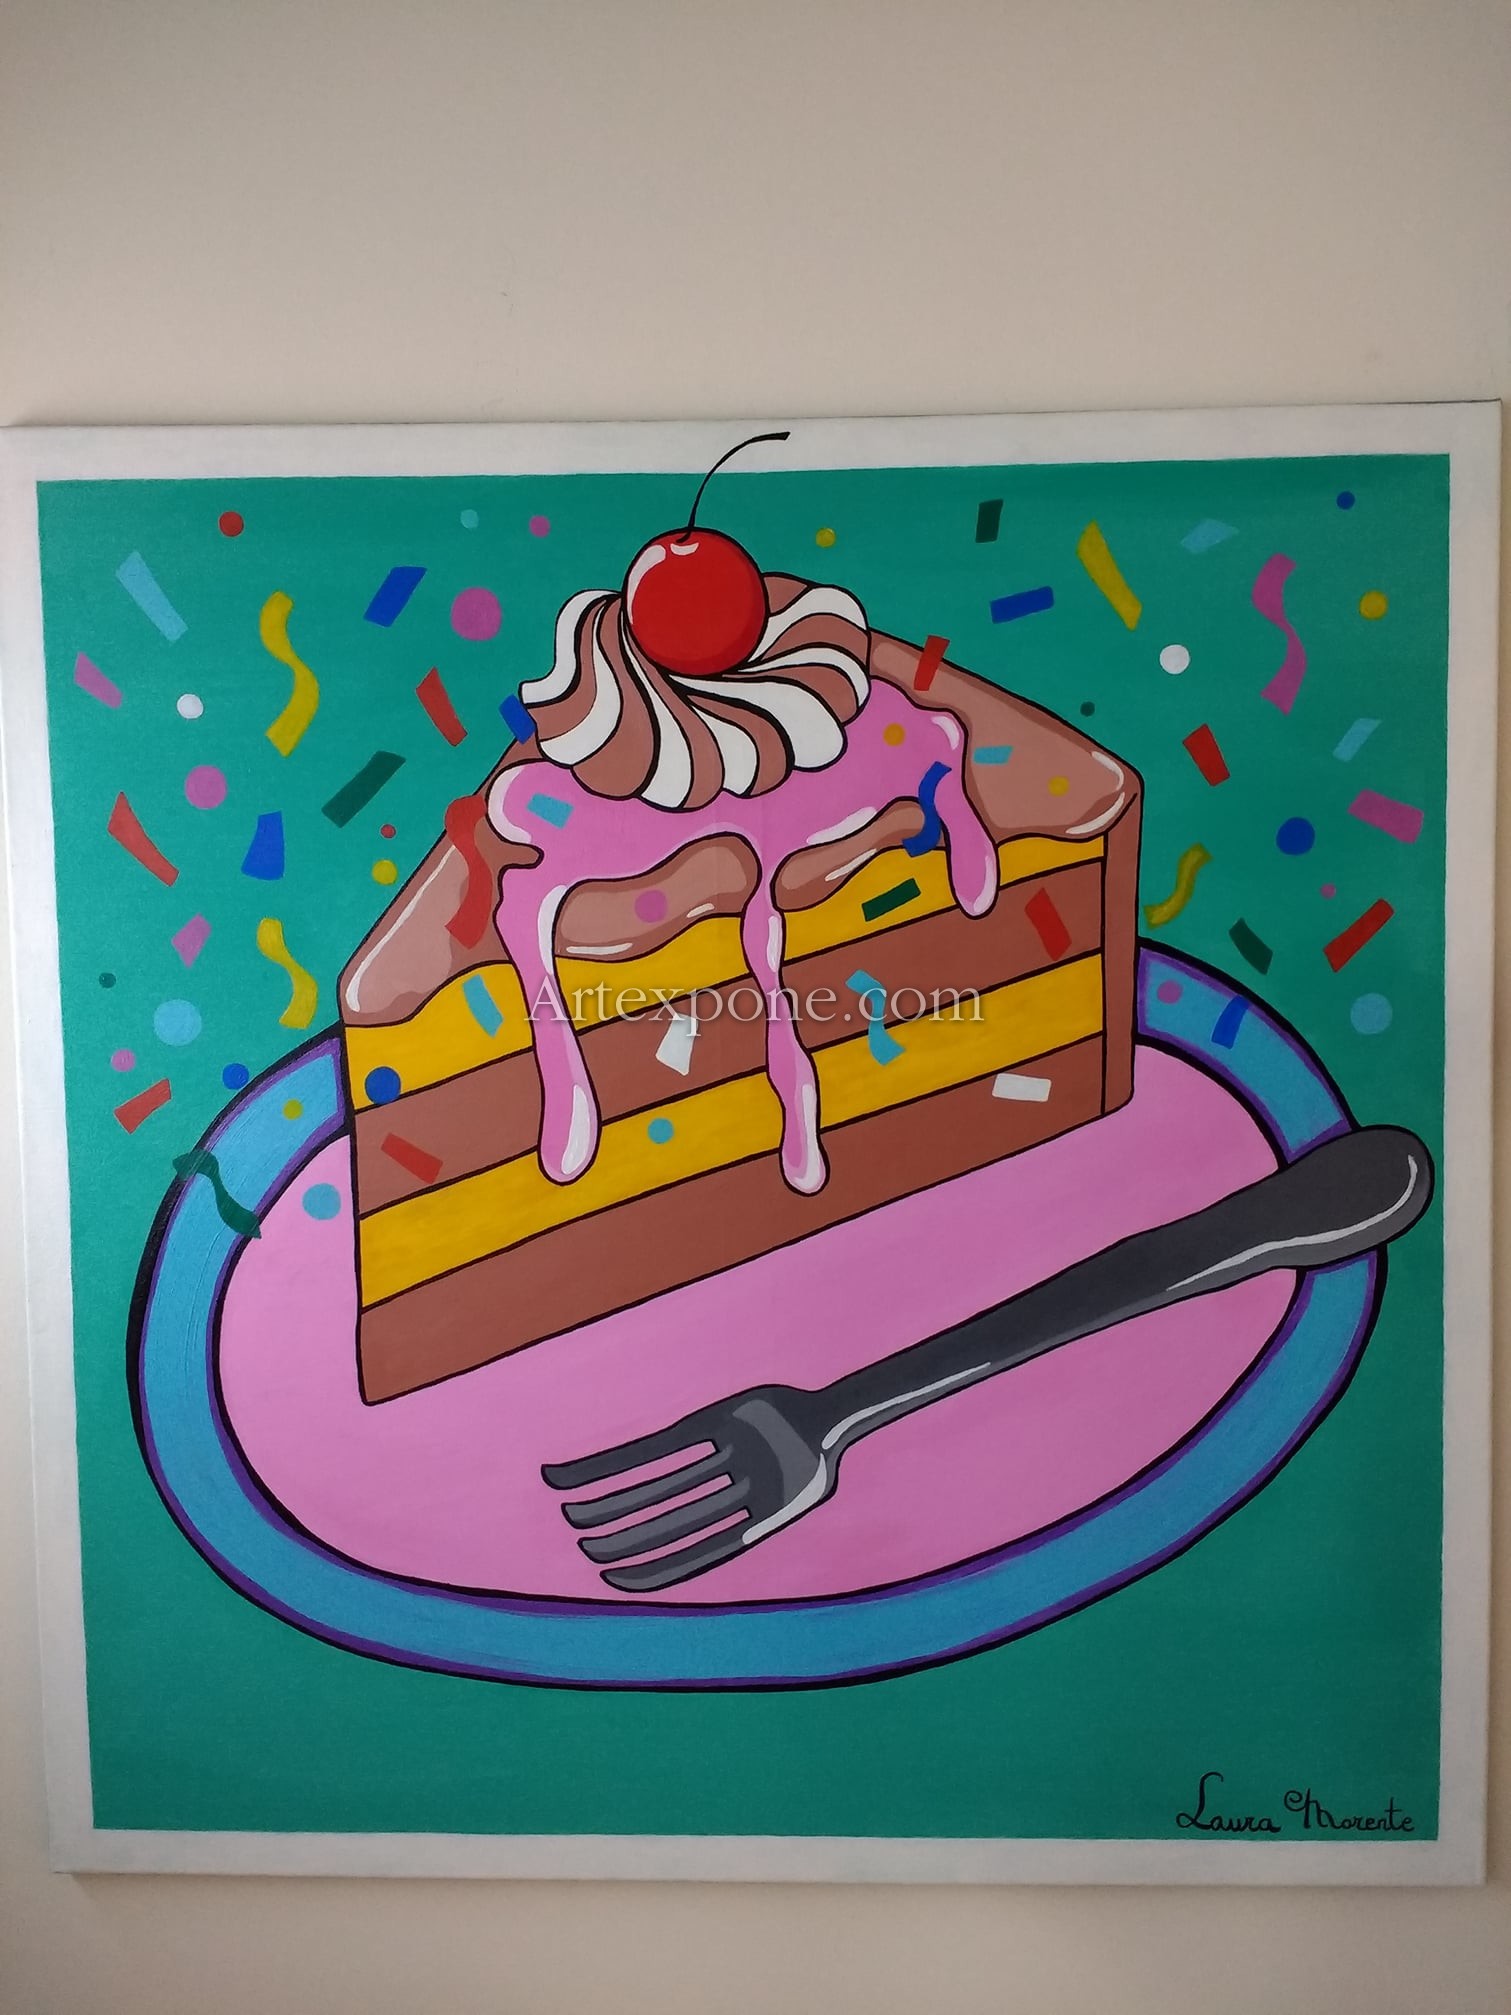 Camión golpeado pollo insalubre Trozo de pastel pop art", Laura Morente. G. Obra de arte | Artexpone.com